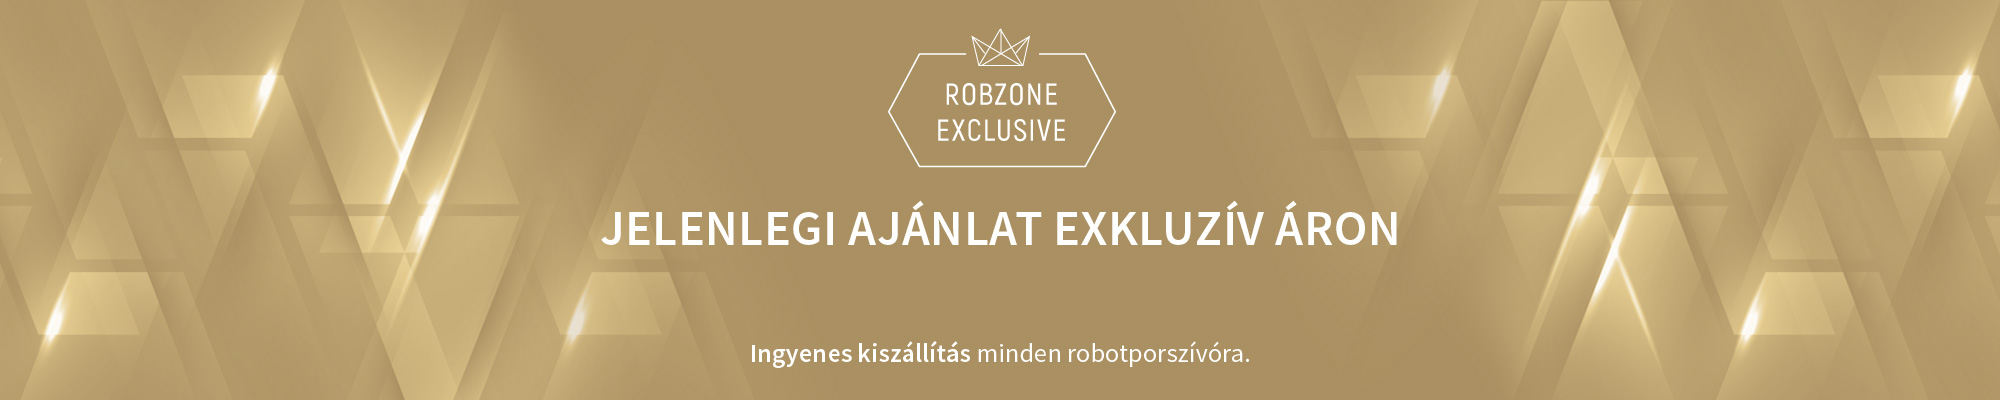  Robzone Exclusive